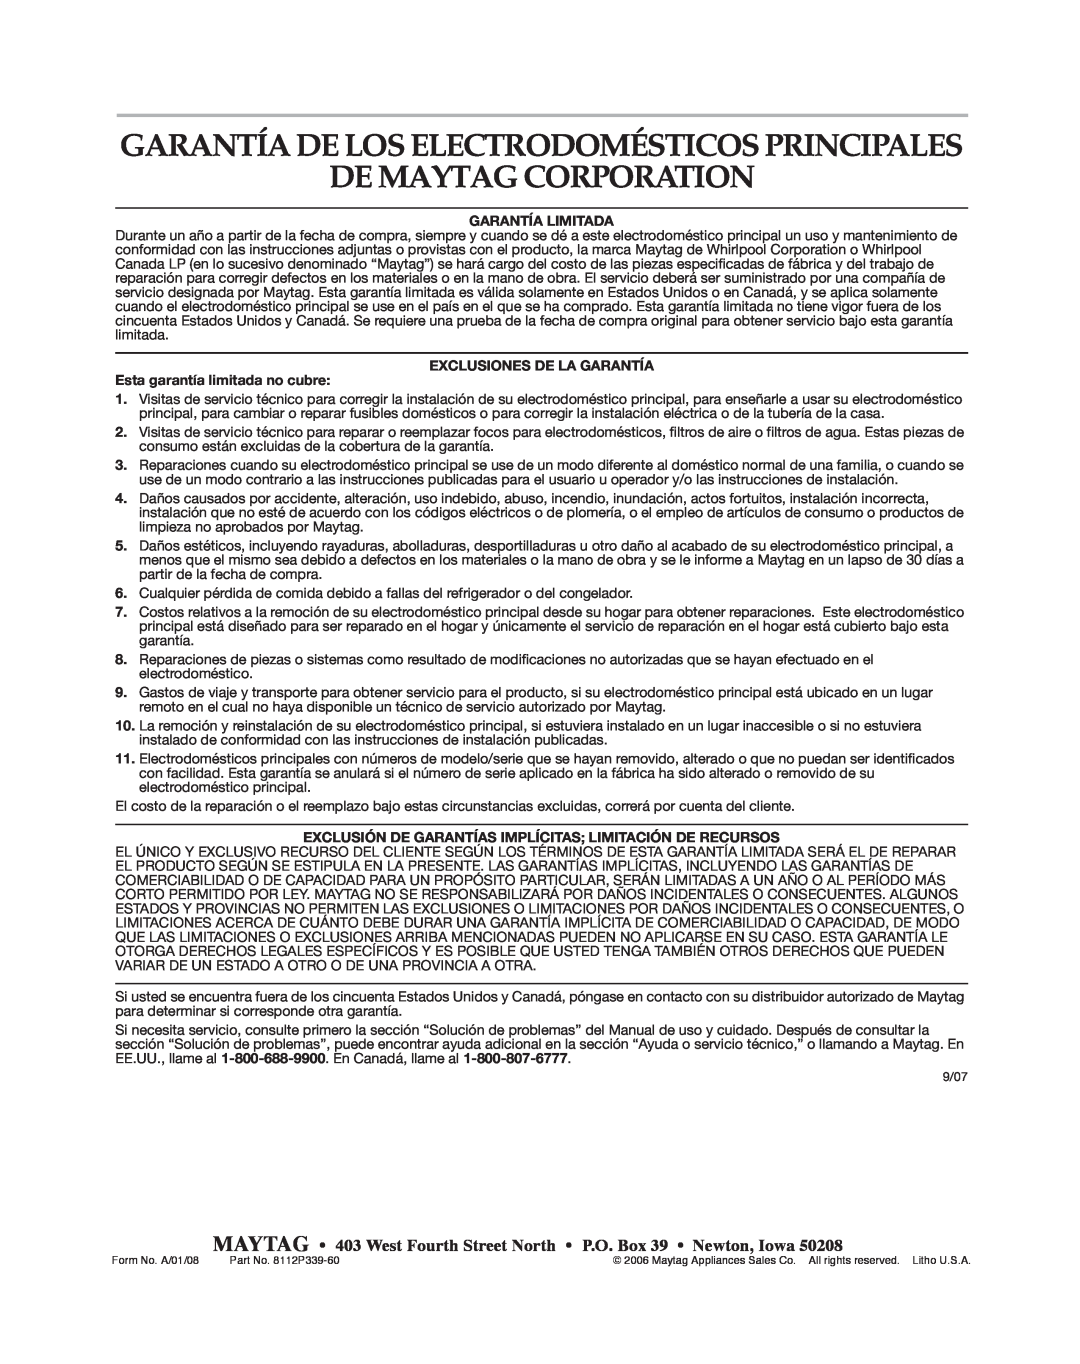 Maytag MGC6536BDW warranty De Maytag Corporation, Garantía De Los Electrodomésticos Principales, Garantía Limitada 